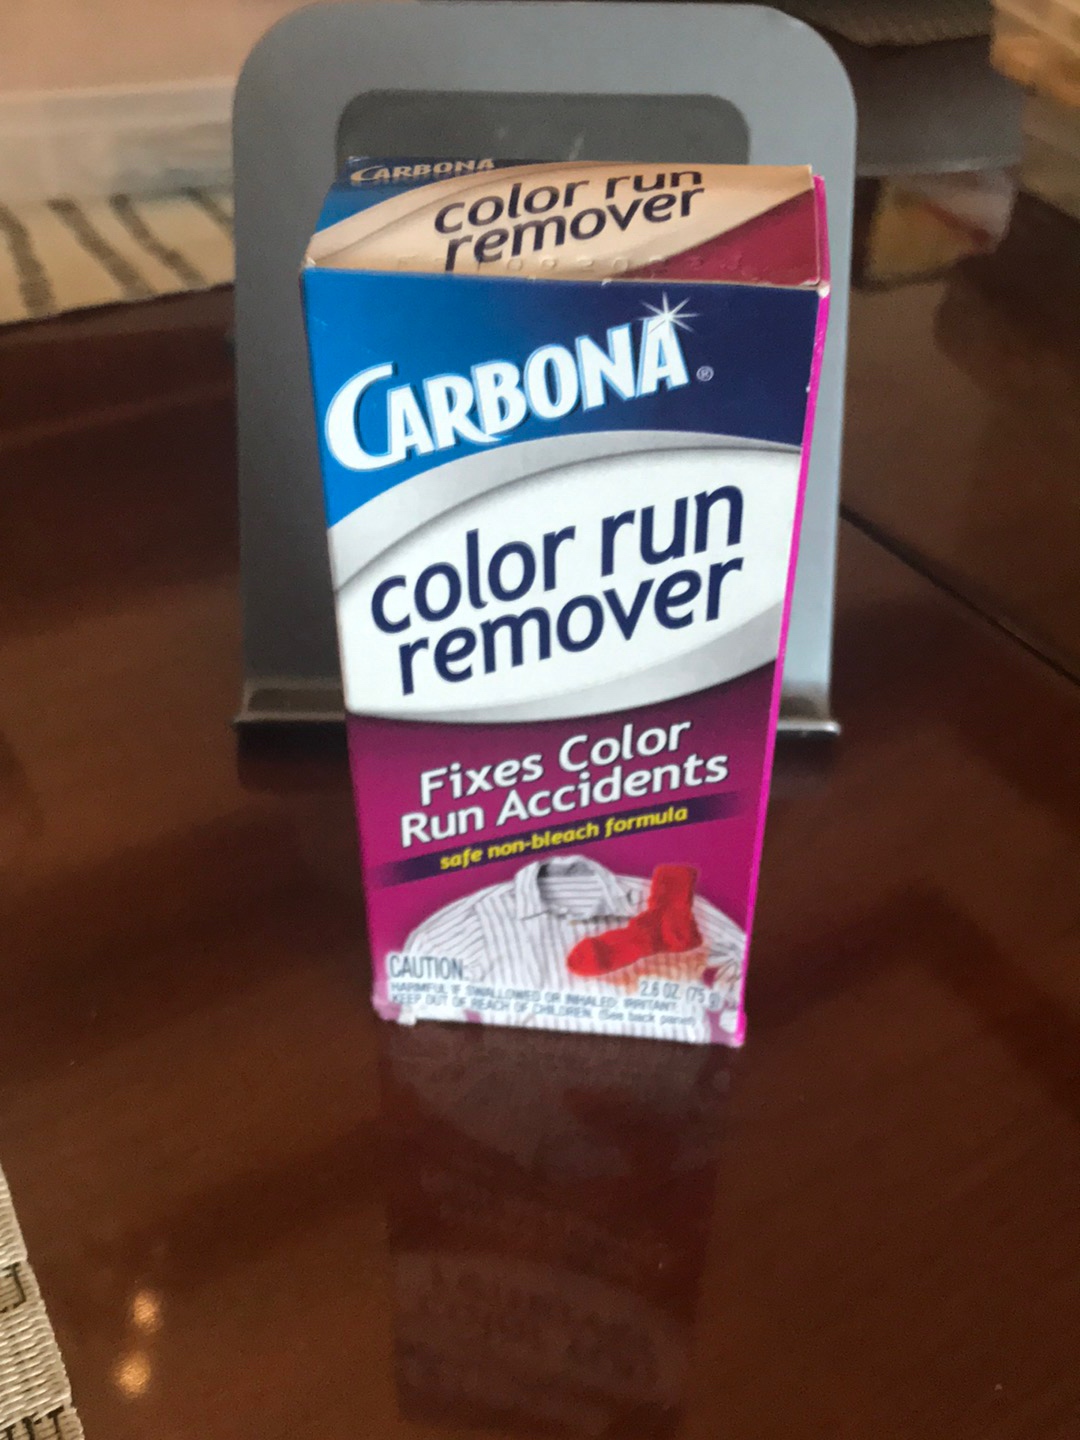 Carbona COLOR RUN REMOVER Fixes Color Run Accidents SAFE NON-BLEACH FORMULA